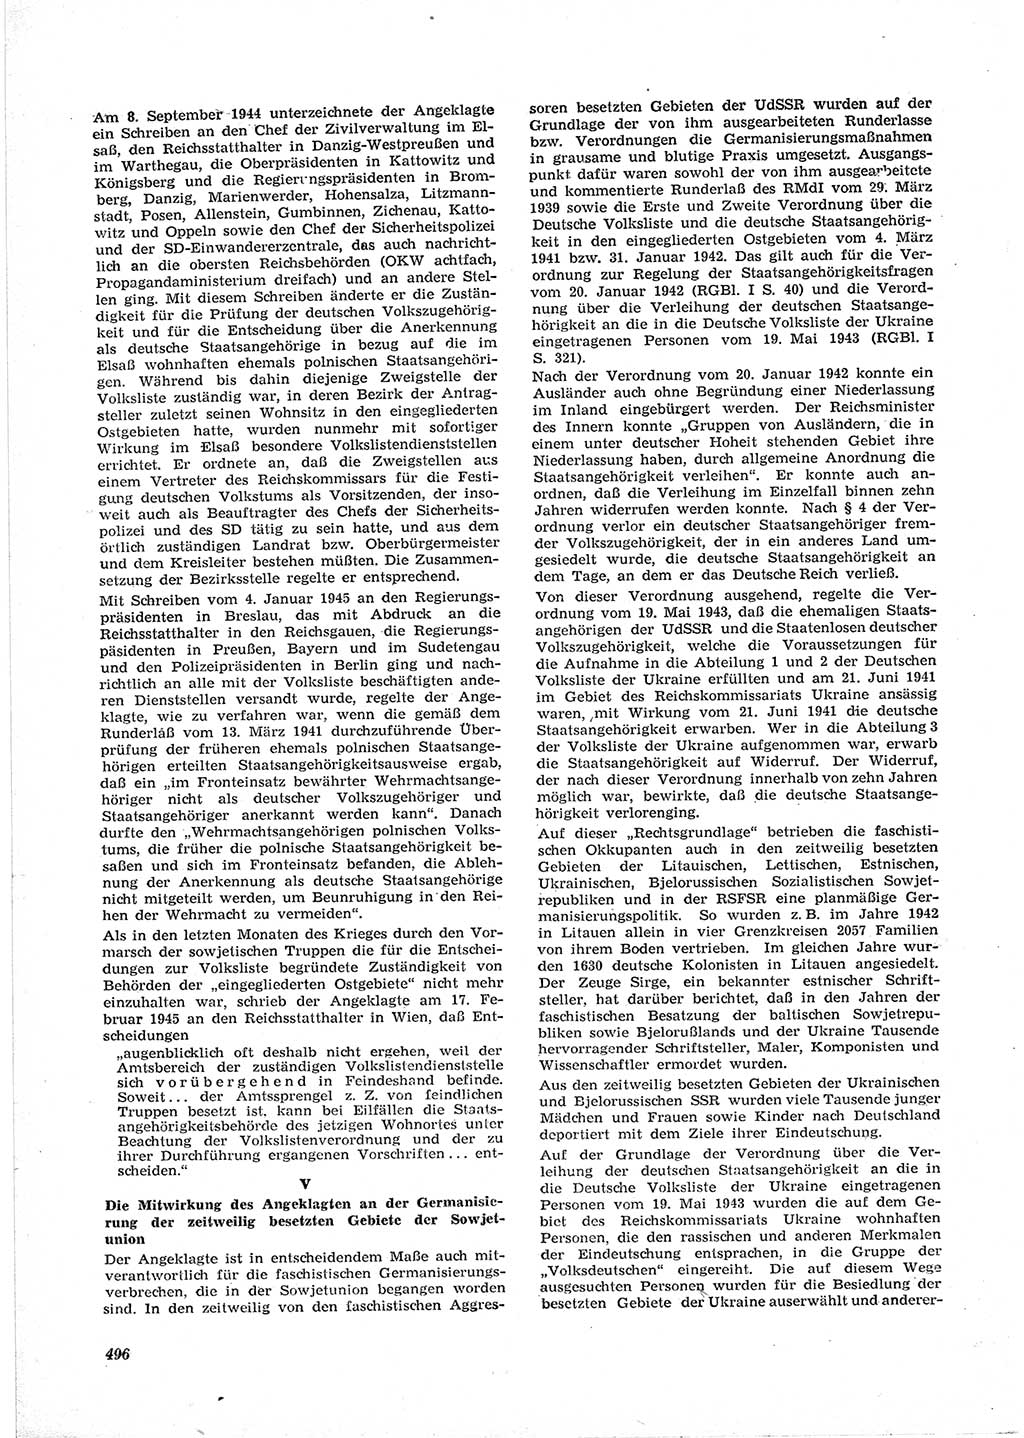 Neue Justiz (NJ), Zeitschrift für Recht und Rechtswissenschaft [Deutsche Demokratische Republik (DDR)], 17. Jahrgang 1963, Seite 496 (NJ DDR 1963, S. 496)